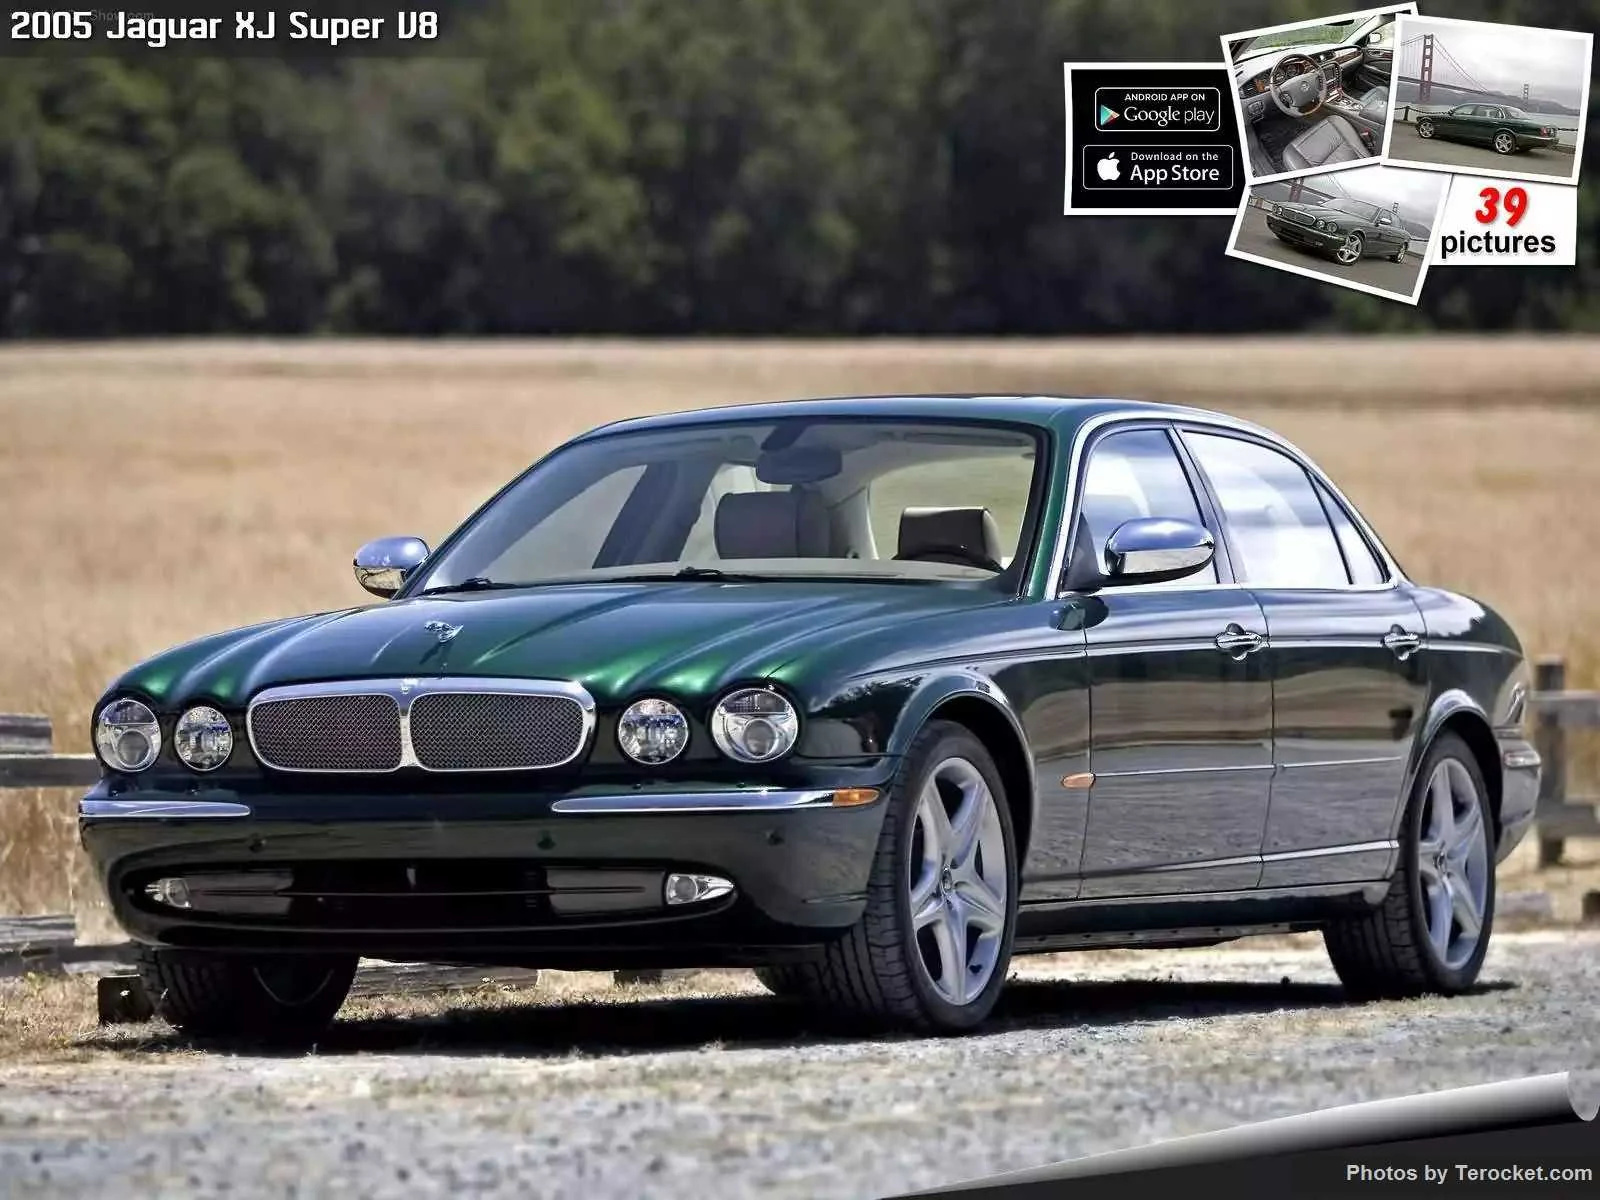 Hình ảnh xe ô tô Jaguar XJ Super V8 2005 & nội ngoại thất